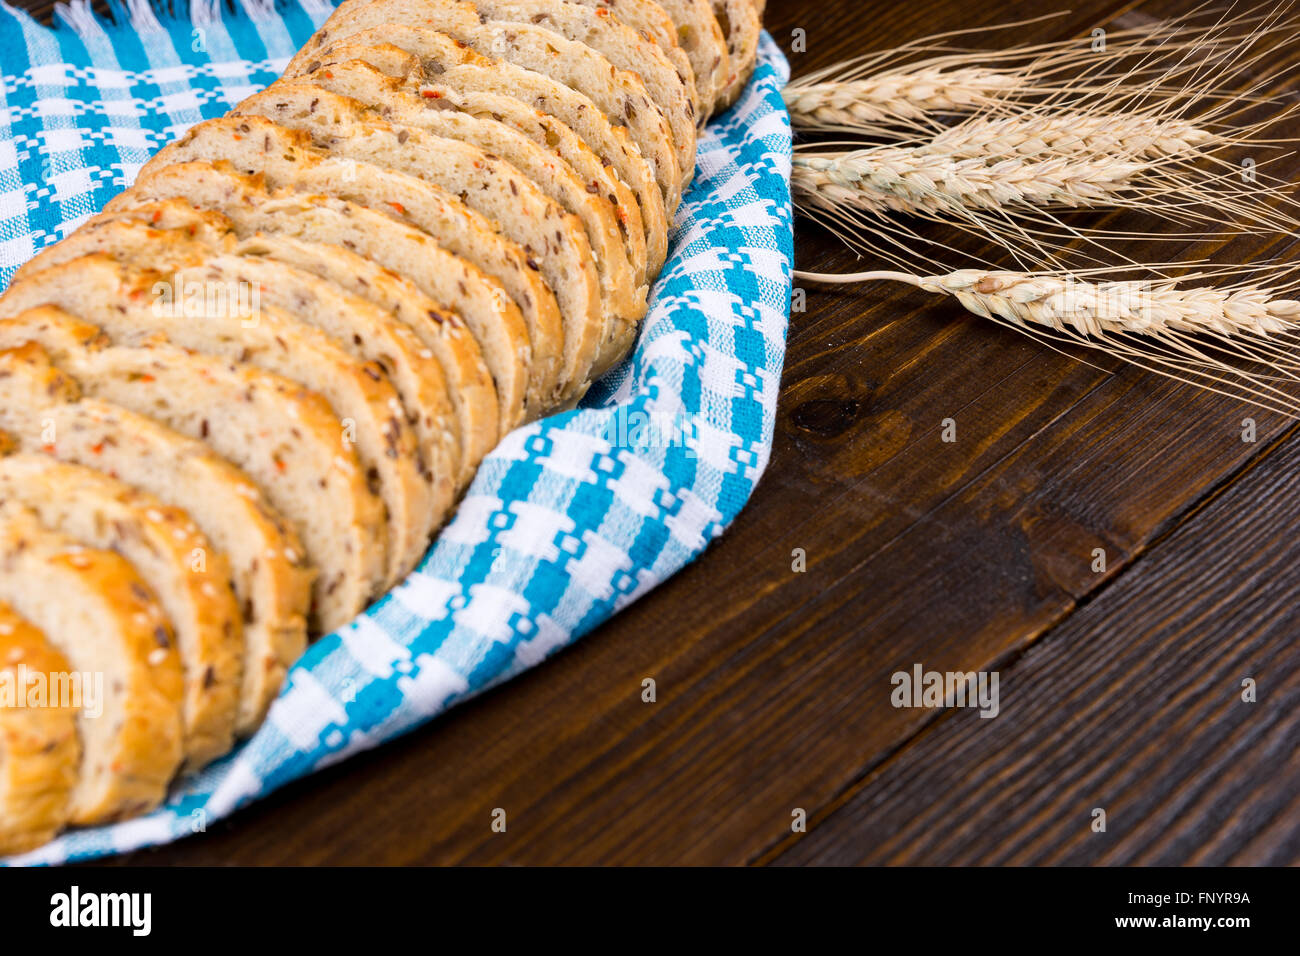 Rodajas de pan integrales sanos muestran en una servilleta azul y blanco de estilo rústico con tres espigas de trigo de oro madura sobre una tabla de madera con espacio de copia. Foto de stock